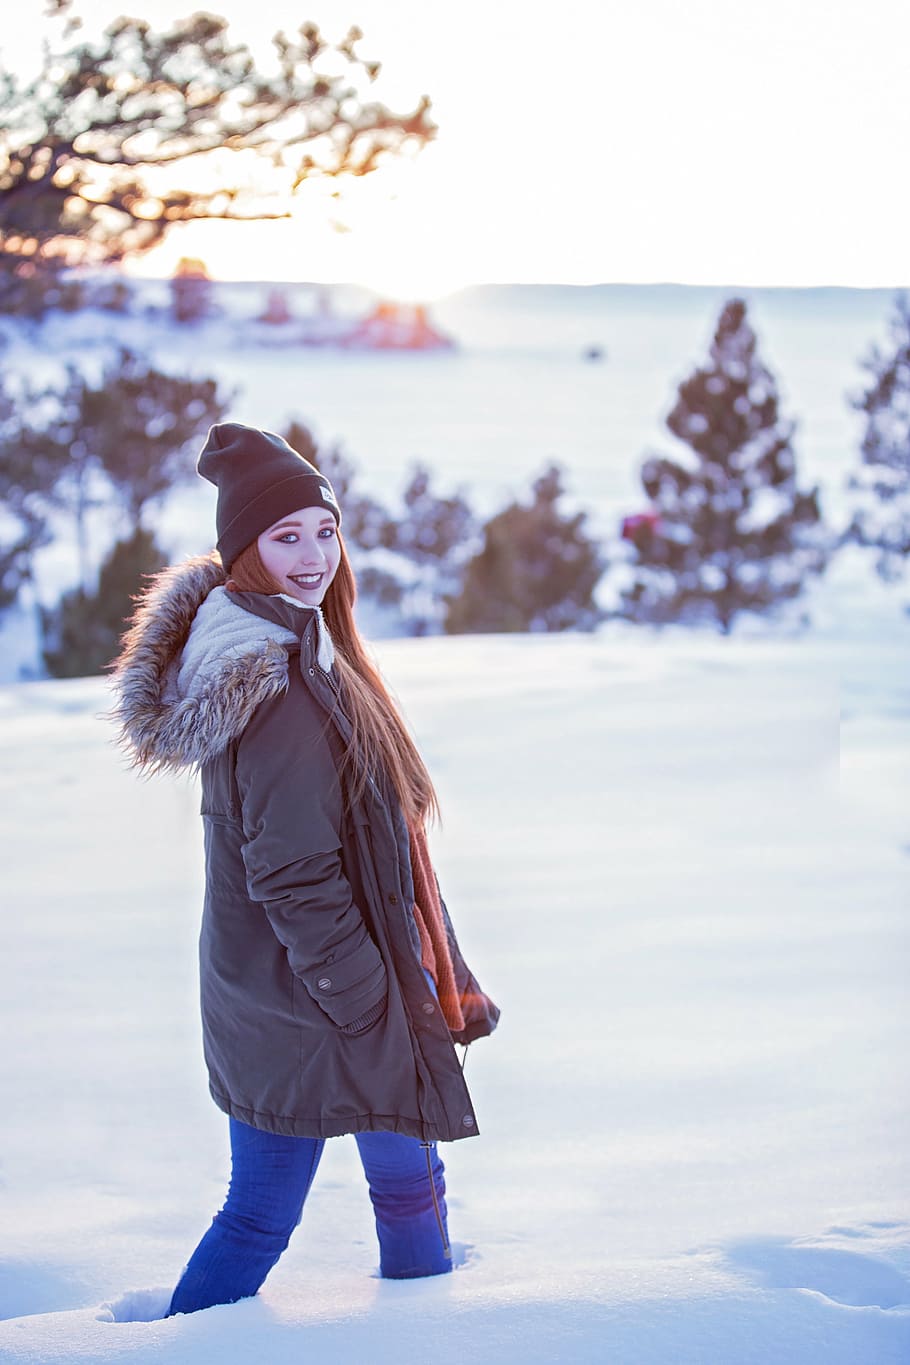 Mujer joven con ropa de abrigo en el frío invierno nieve bebiendo